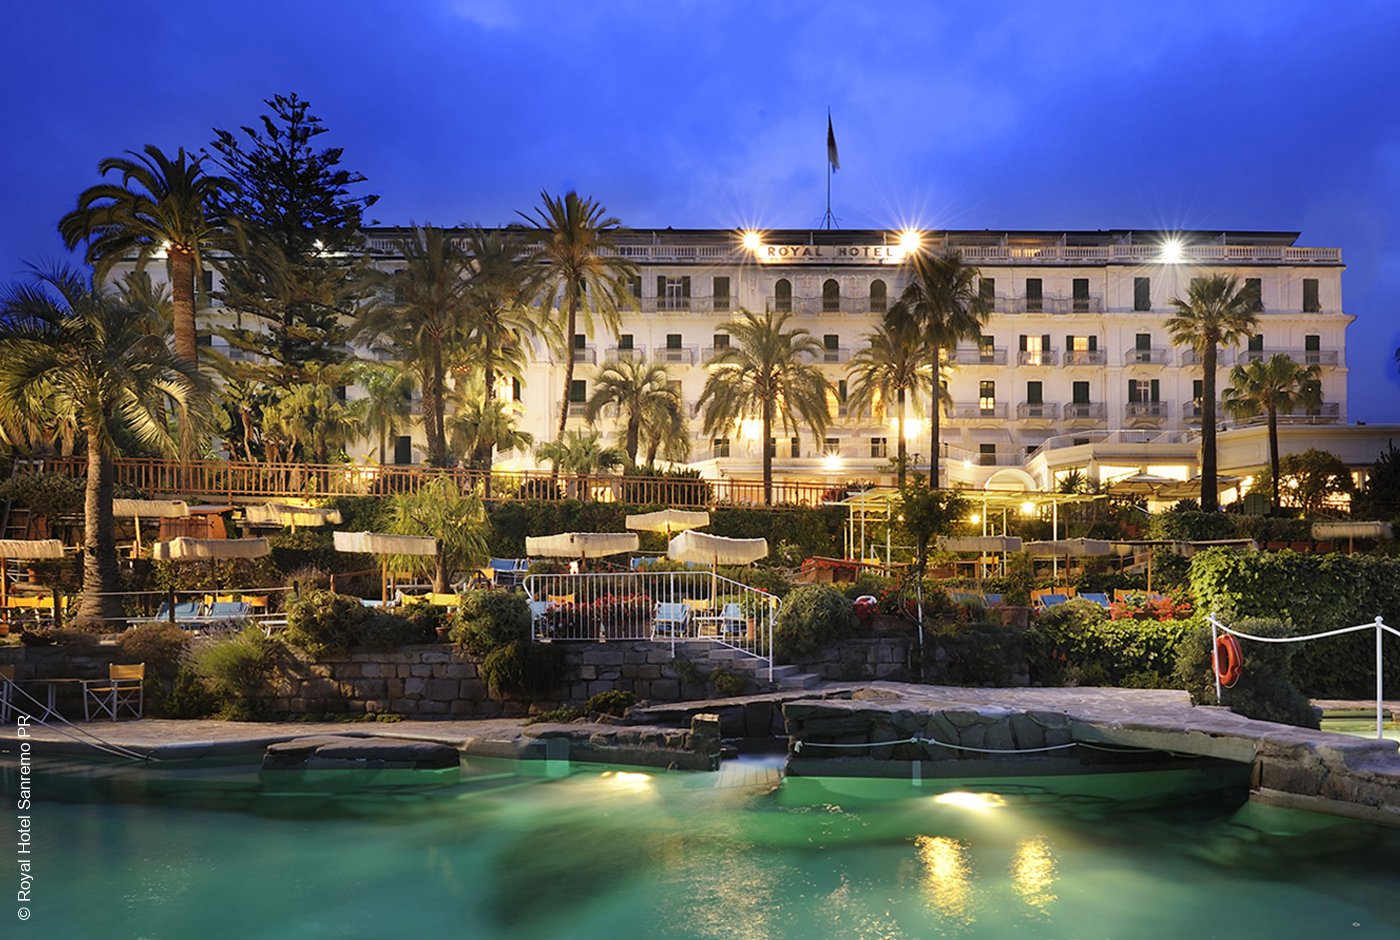 Royal Hotel | Sanremo | Hotel bei Nacht | Archiv | luxuszeit.com